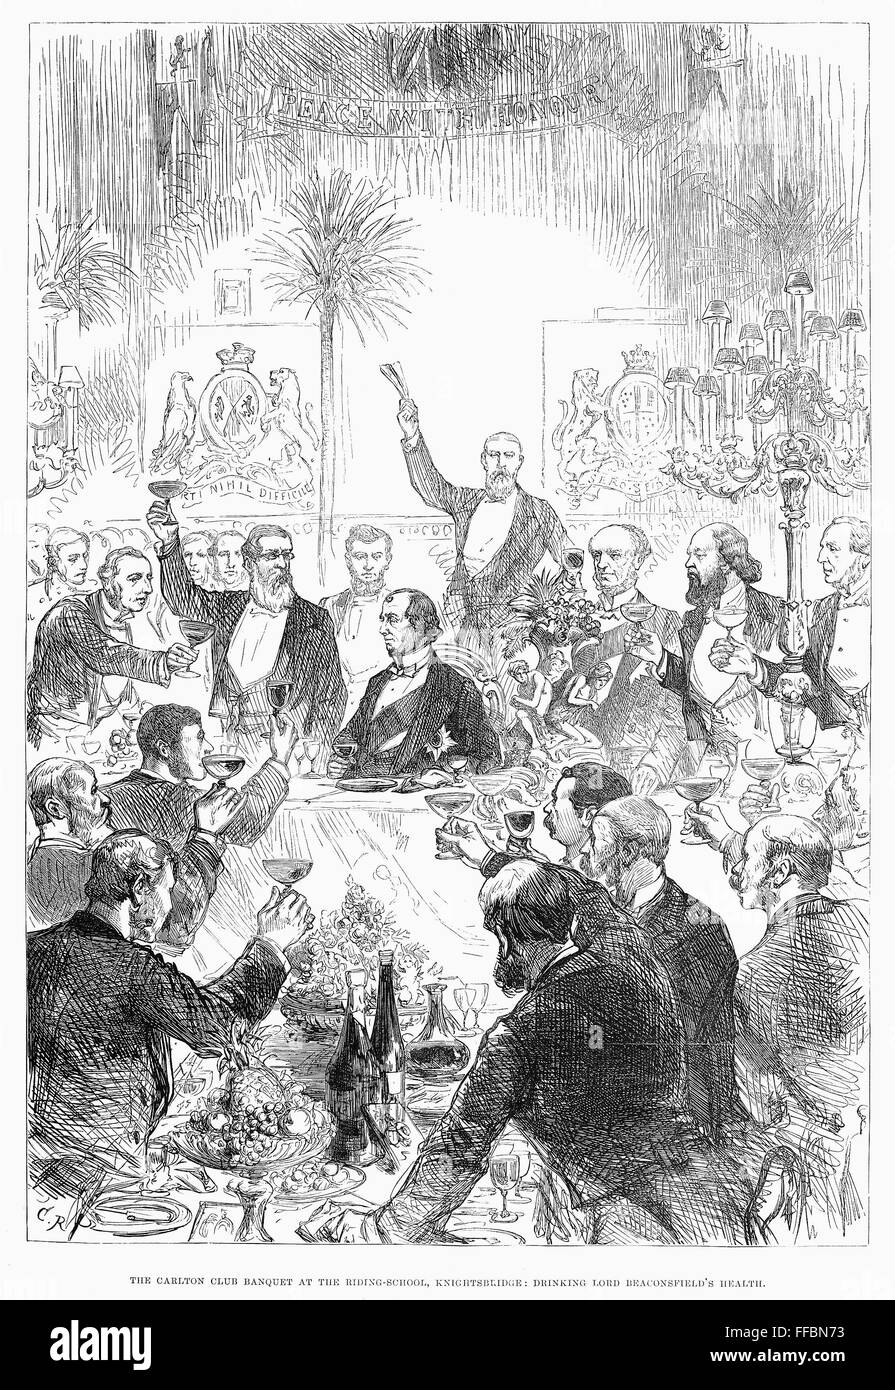 Benjamín Disraeli (1804-1881). /N1er conde de Beaconsfield. Beber a Lord Beaconsfield de salud durante un banquete en el Carlton Club de Londres, 1878. Grabado en madera de un periódico inglés contemporáneo. Foto de stock